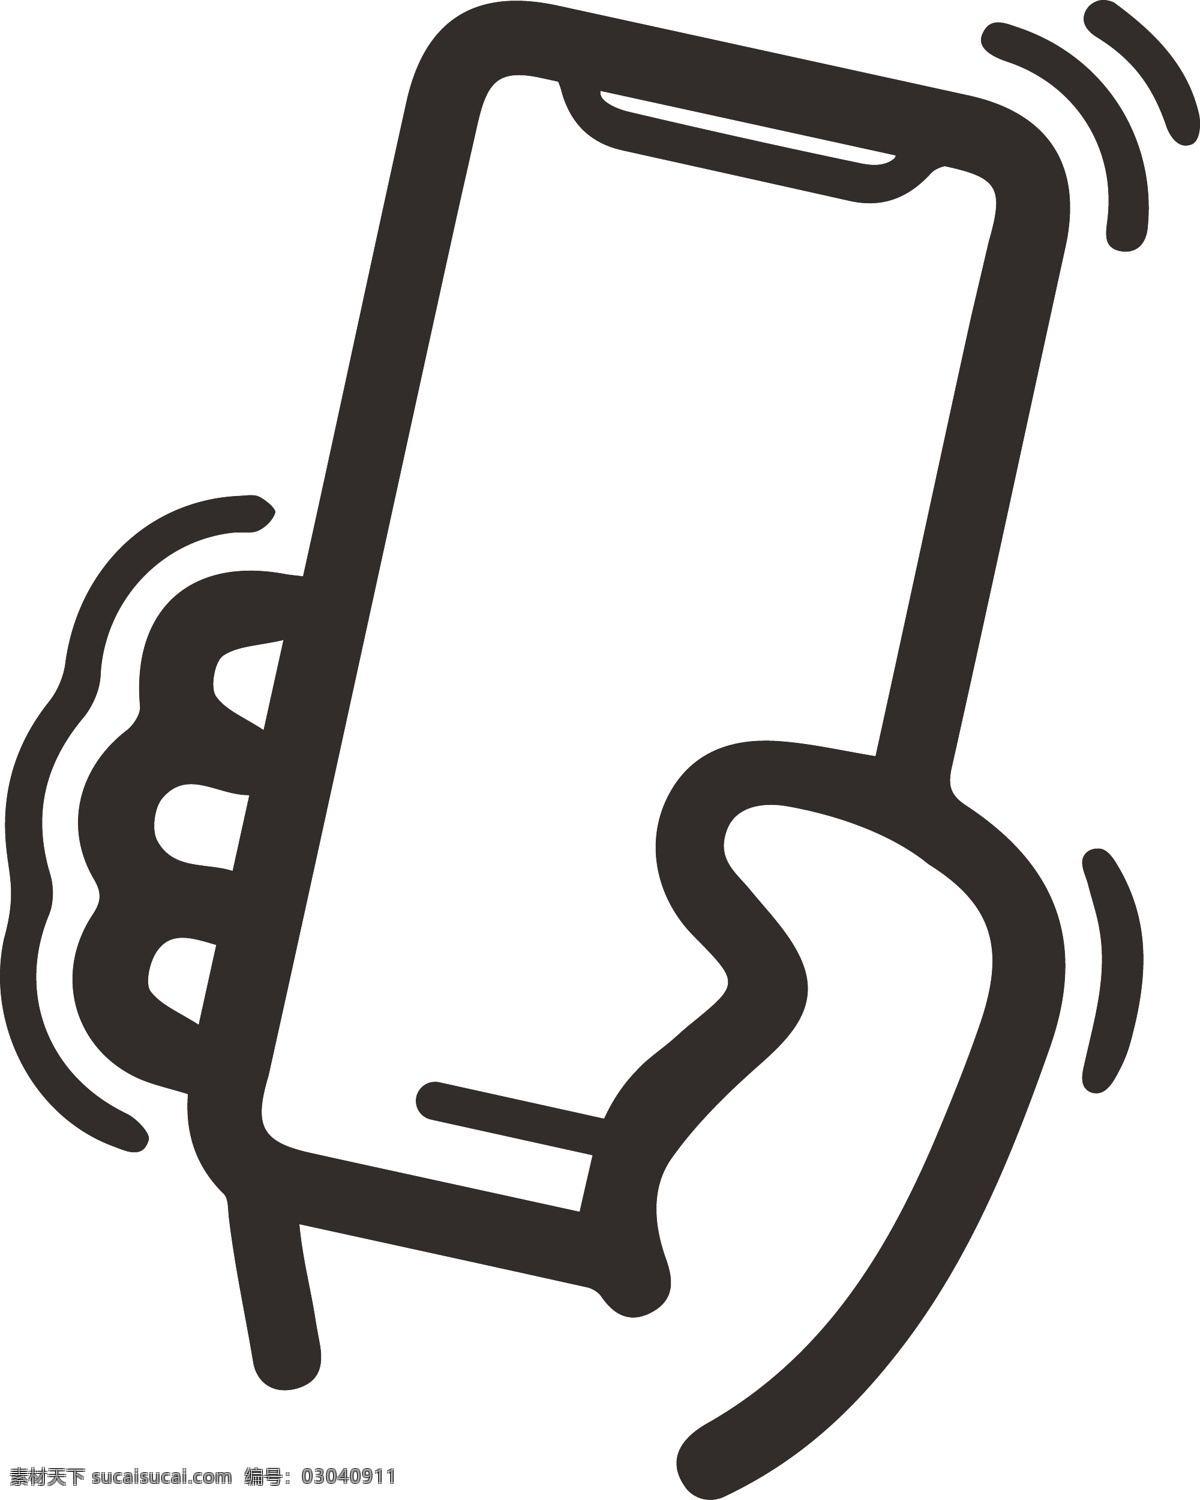 ui 图标 手机 摇 l 矢量图 手机图标 摇一摇图标 ui图标 手机矢量图 手图标 摇一摇 标志设计 logo设计 手机logo 标志图标 网页小图标